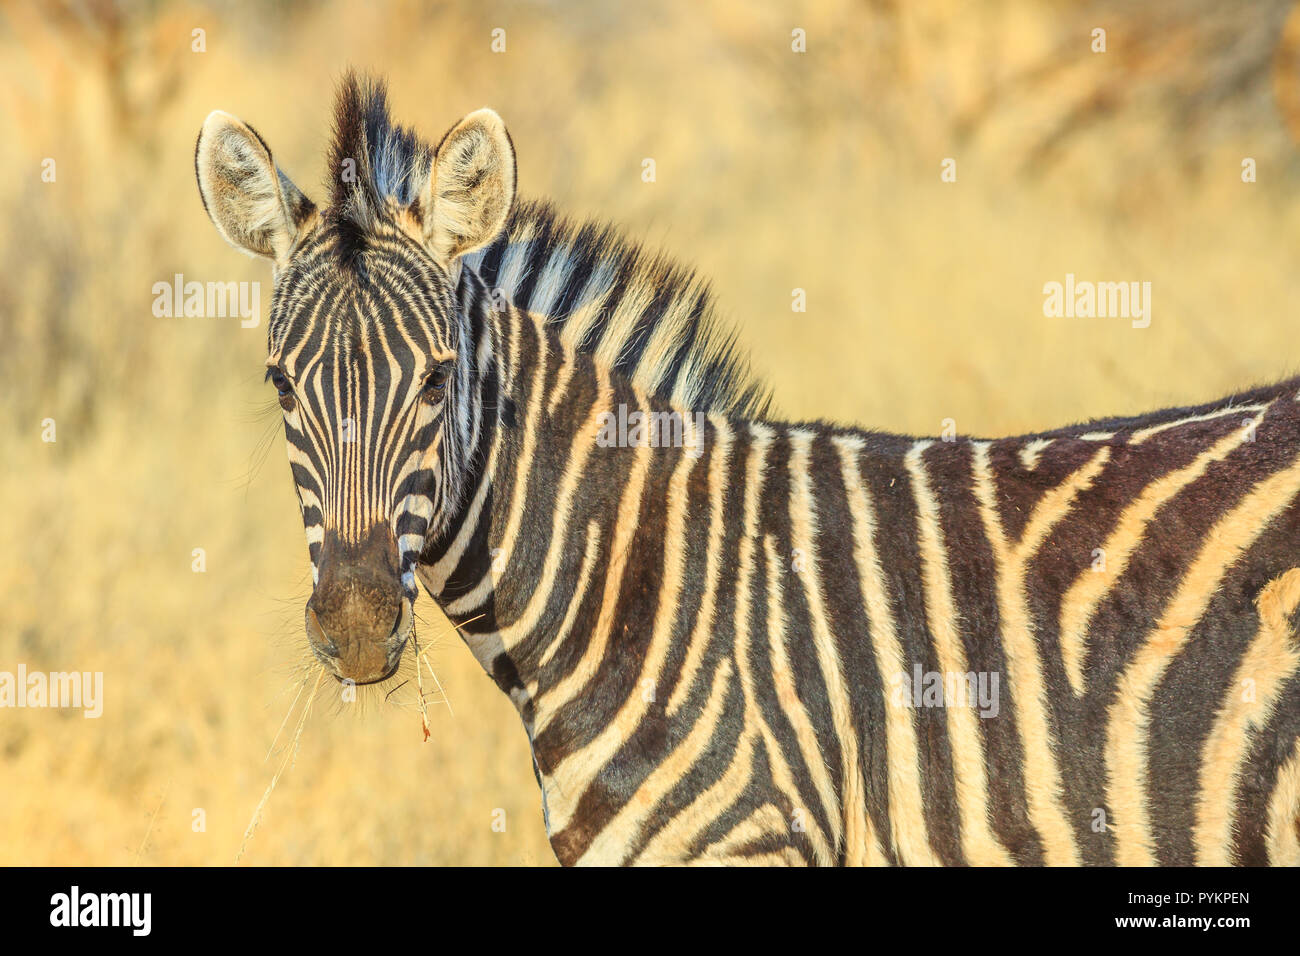 Nahaufnahme der Afrikanischen Zebra stehend in Madikwe Game Reserve, Südafrika, an der Grenze zu Botswana in der Nähe der Kalahari Wüste. Game Drive Safari. Unscharfer Hintergrund. Stockfoto